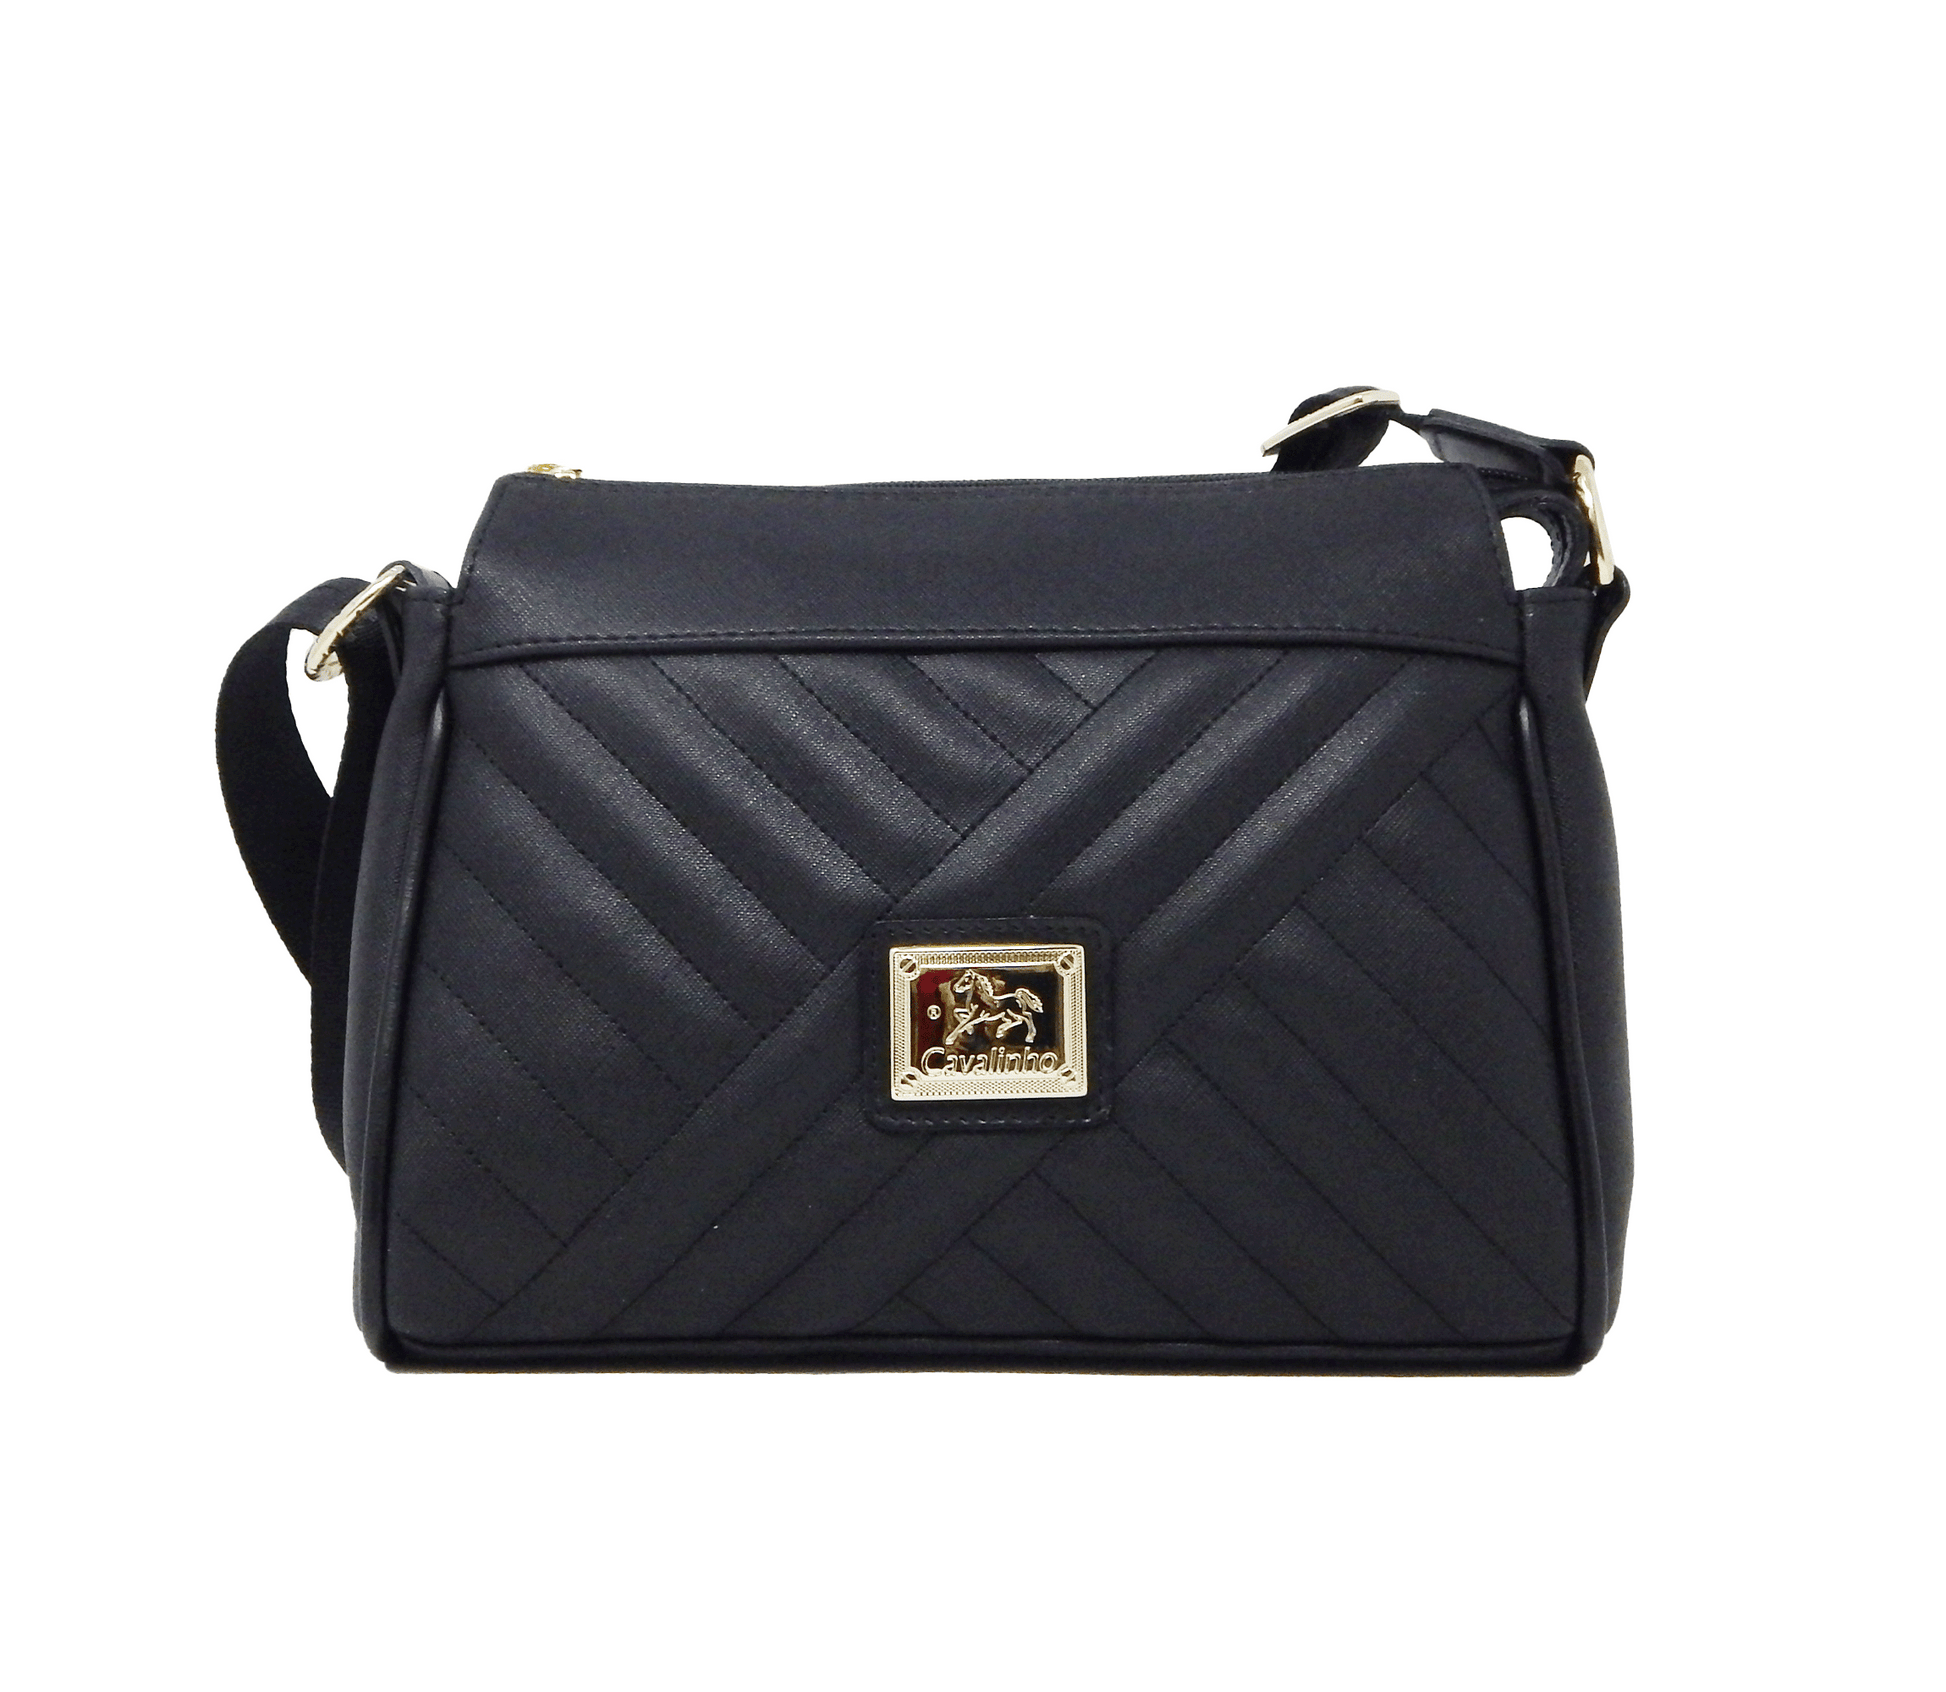 Cavalinho Charming Crossbody Bag - Black - 18470344.01_1